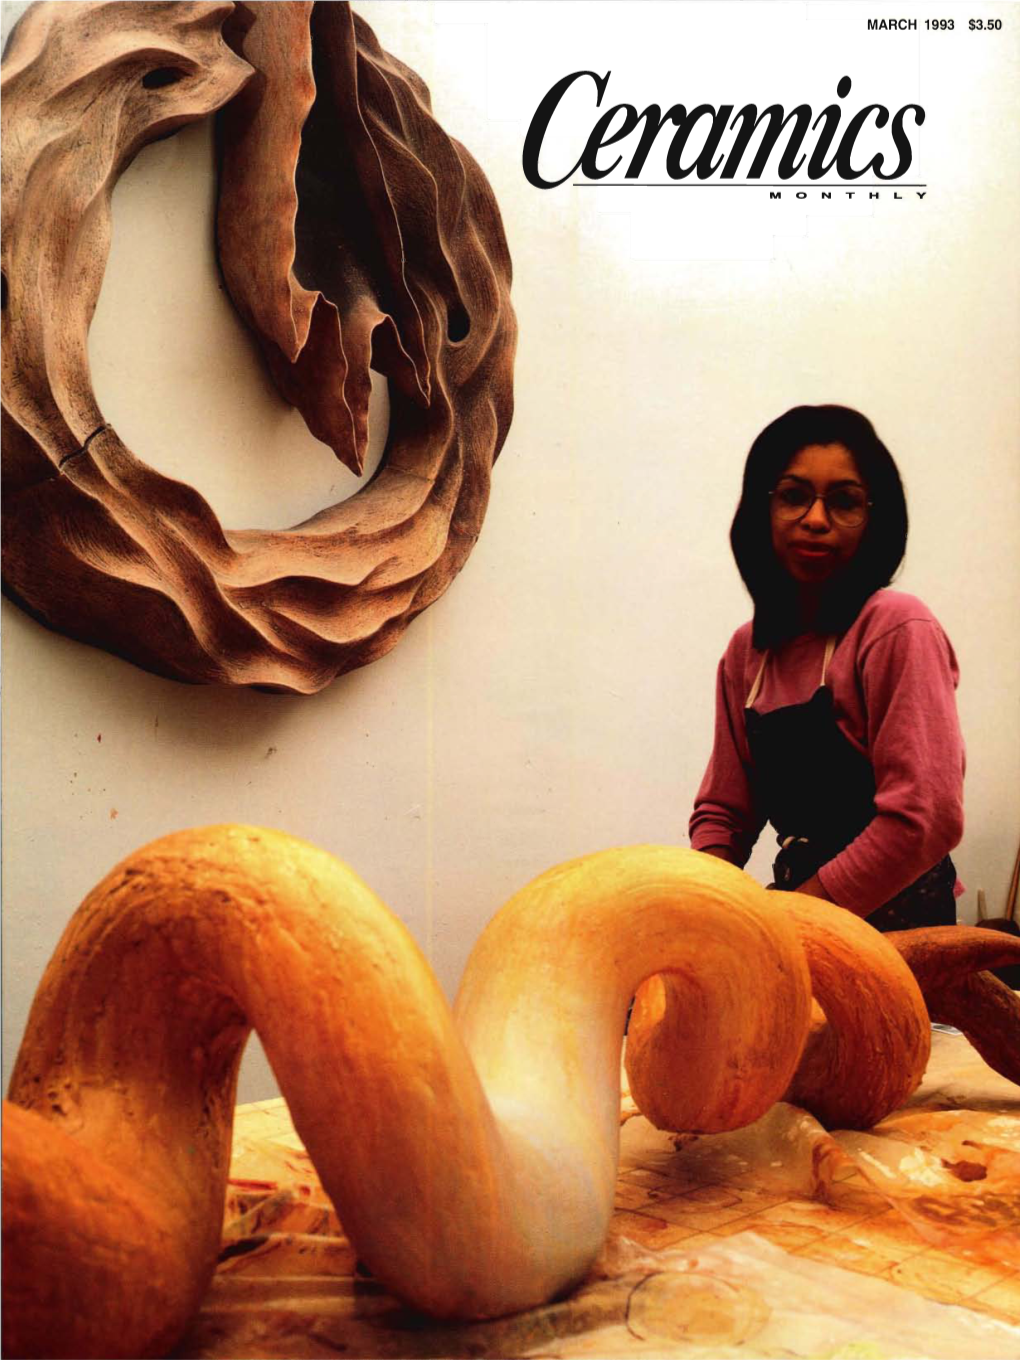 Ceramics Monthly Mar93 Cei03